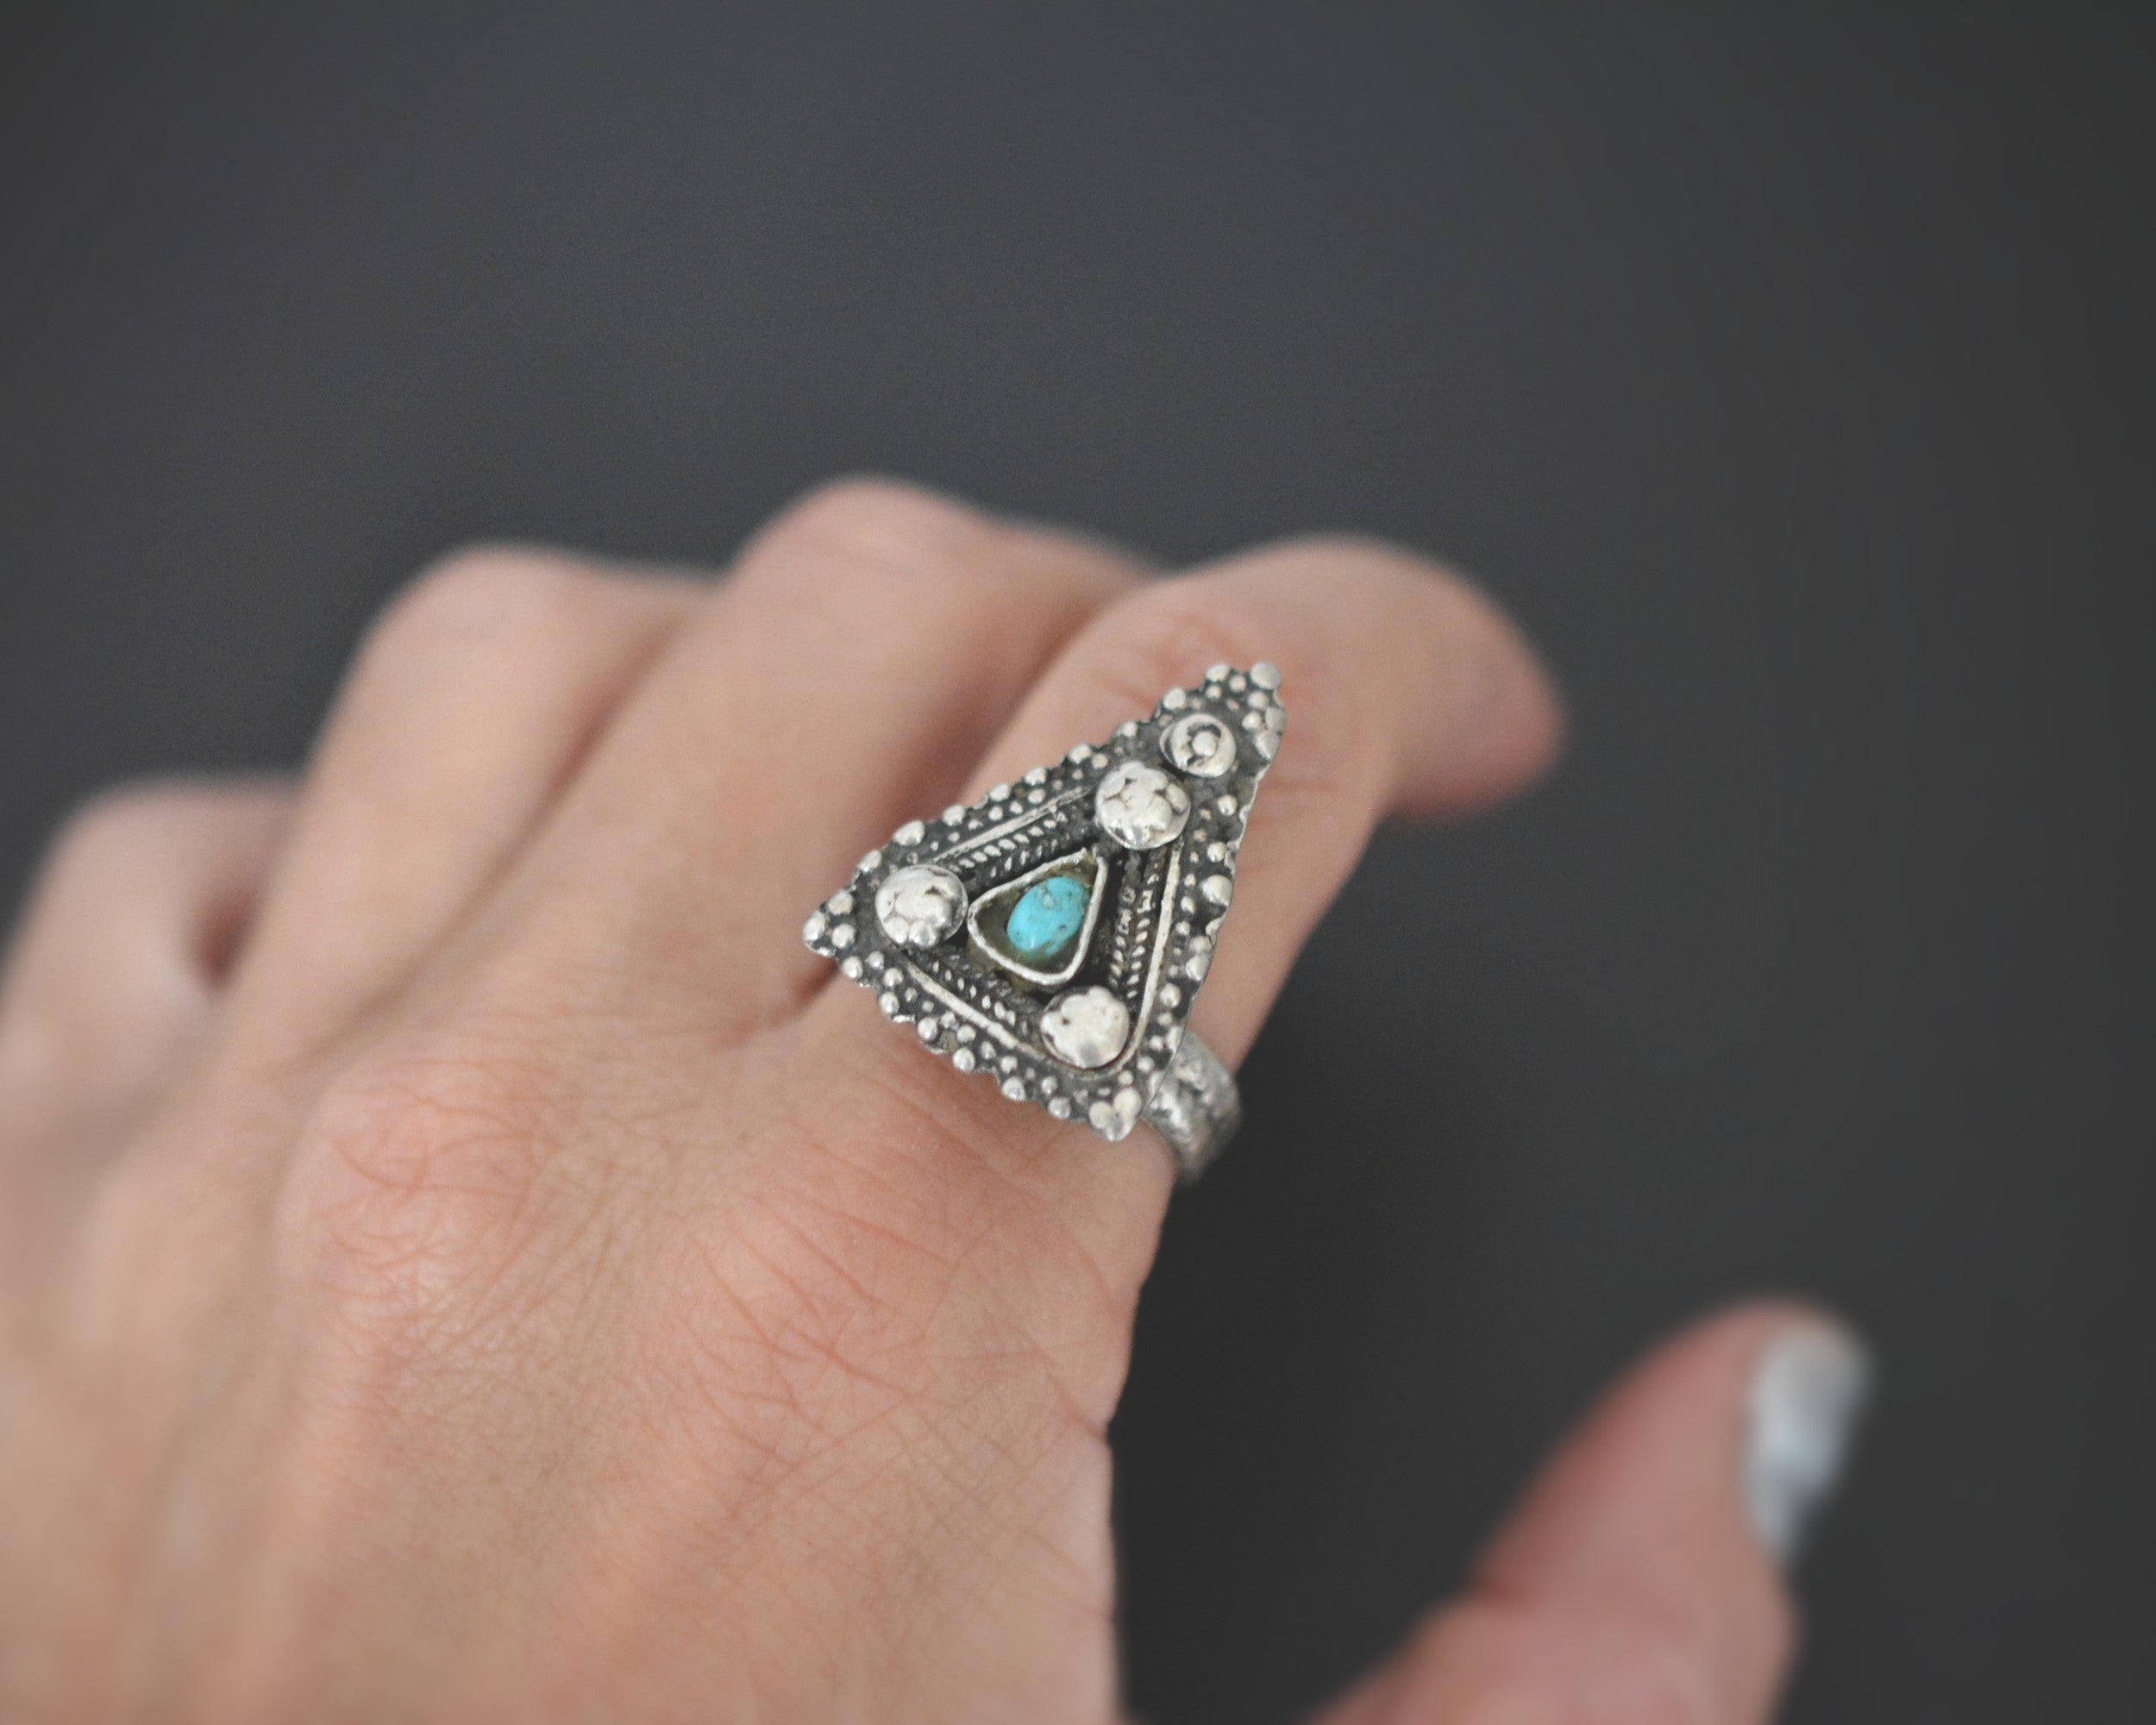 Ethnic Turquoise Ring - Size 8.25